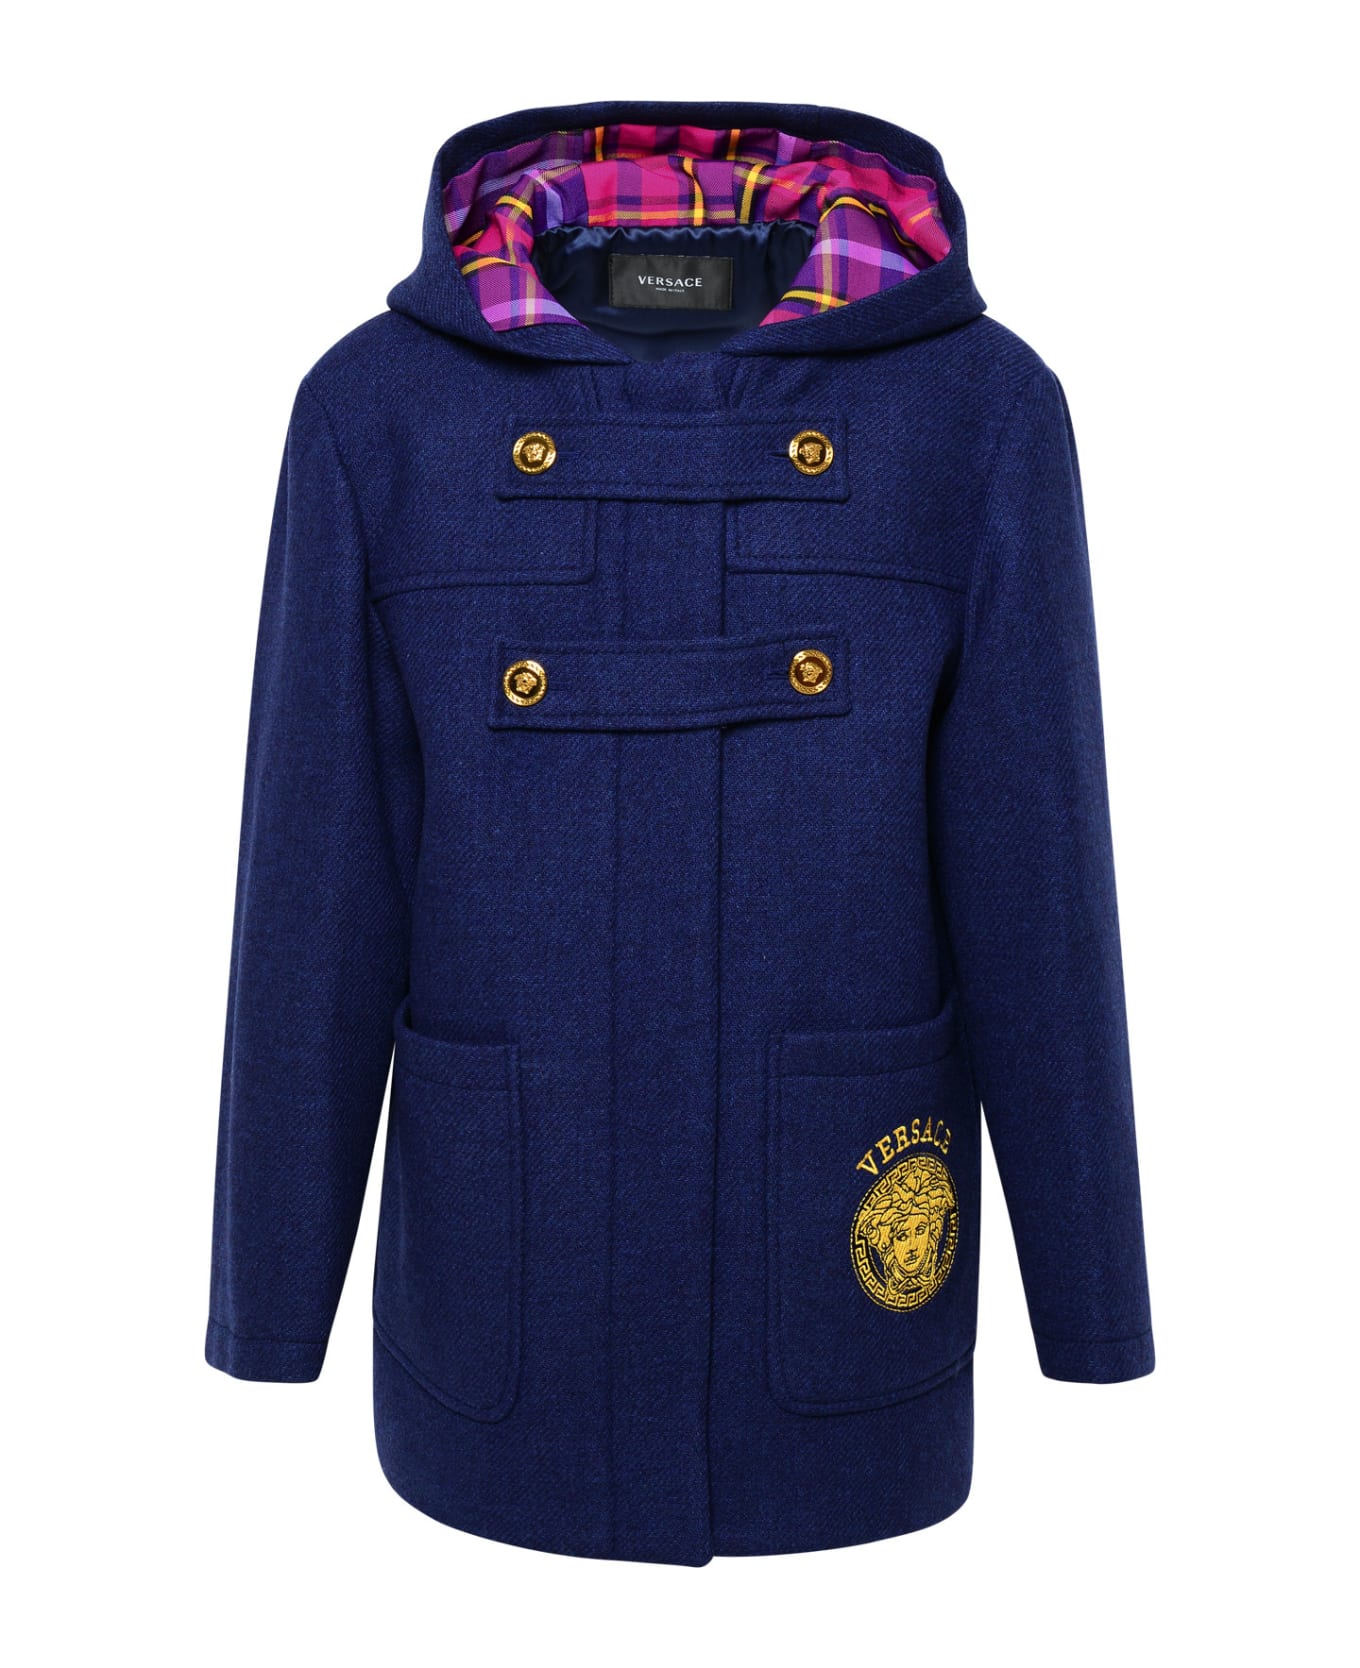 Versace Blue Wool Coat - Navy